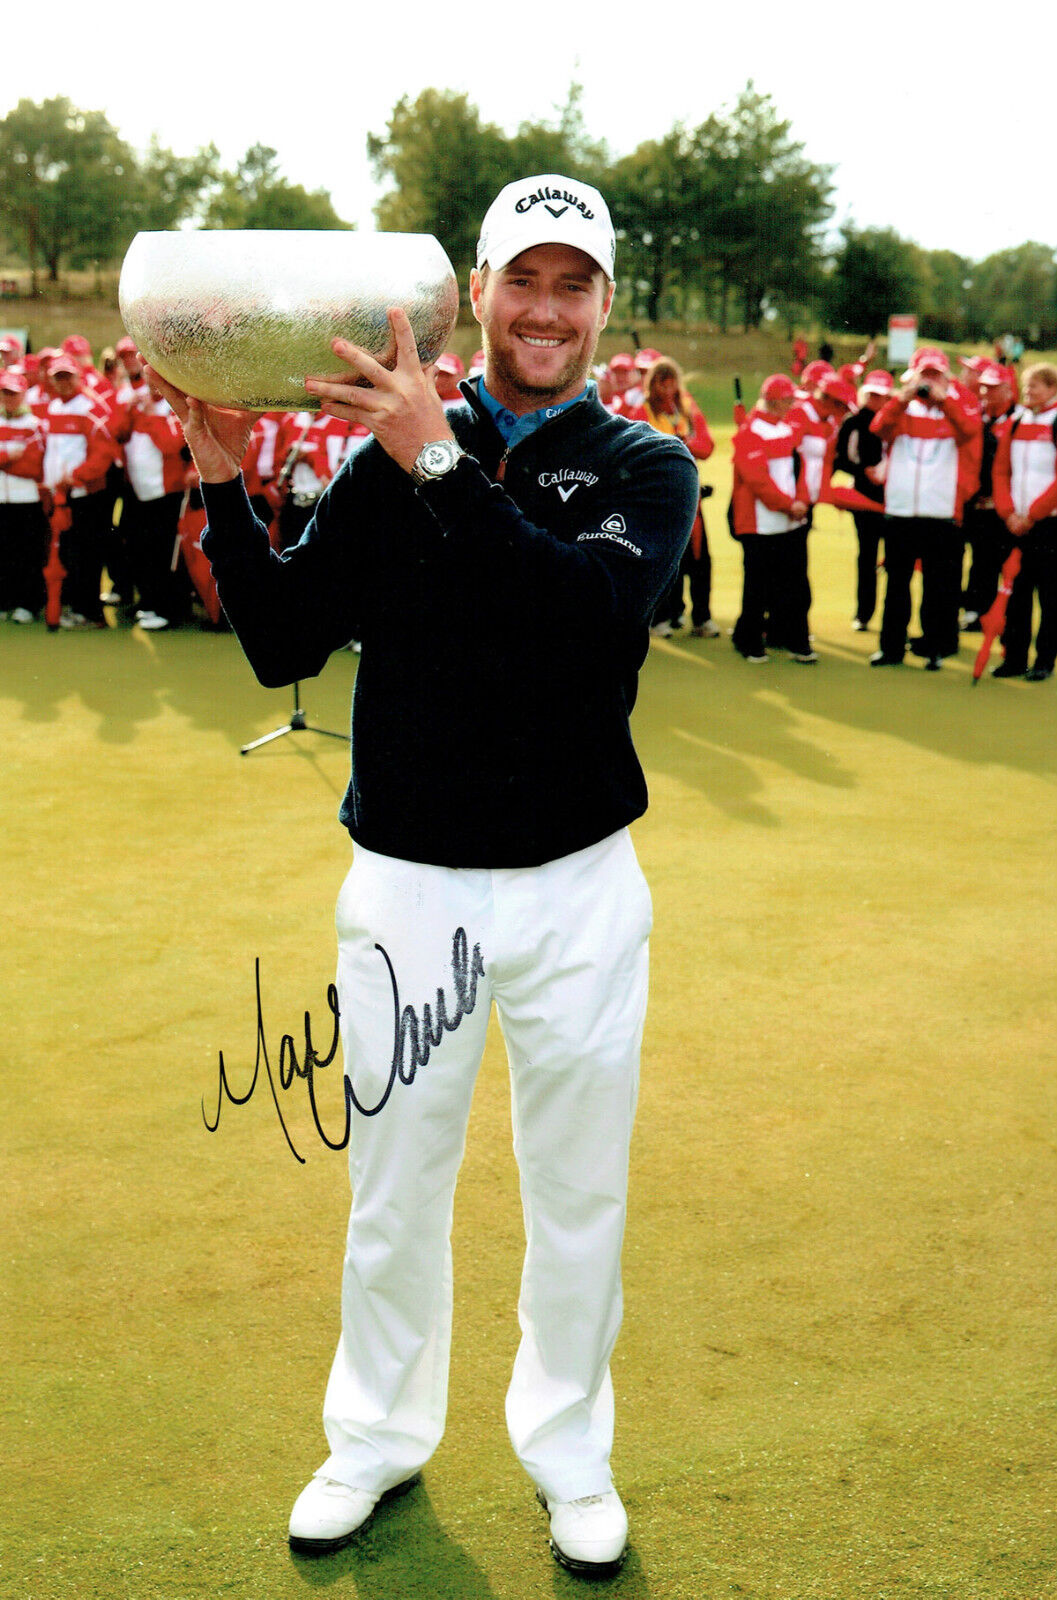 Marc WARREN 12x8 Photo Poster painting Signed Autograph European Tour Golf AFTAL COA